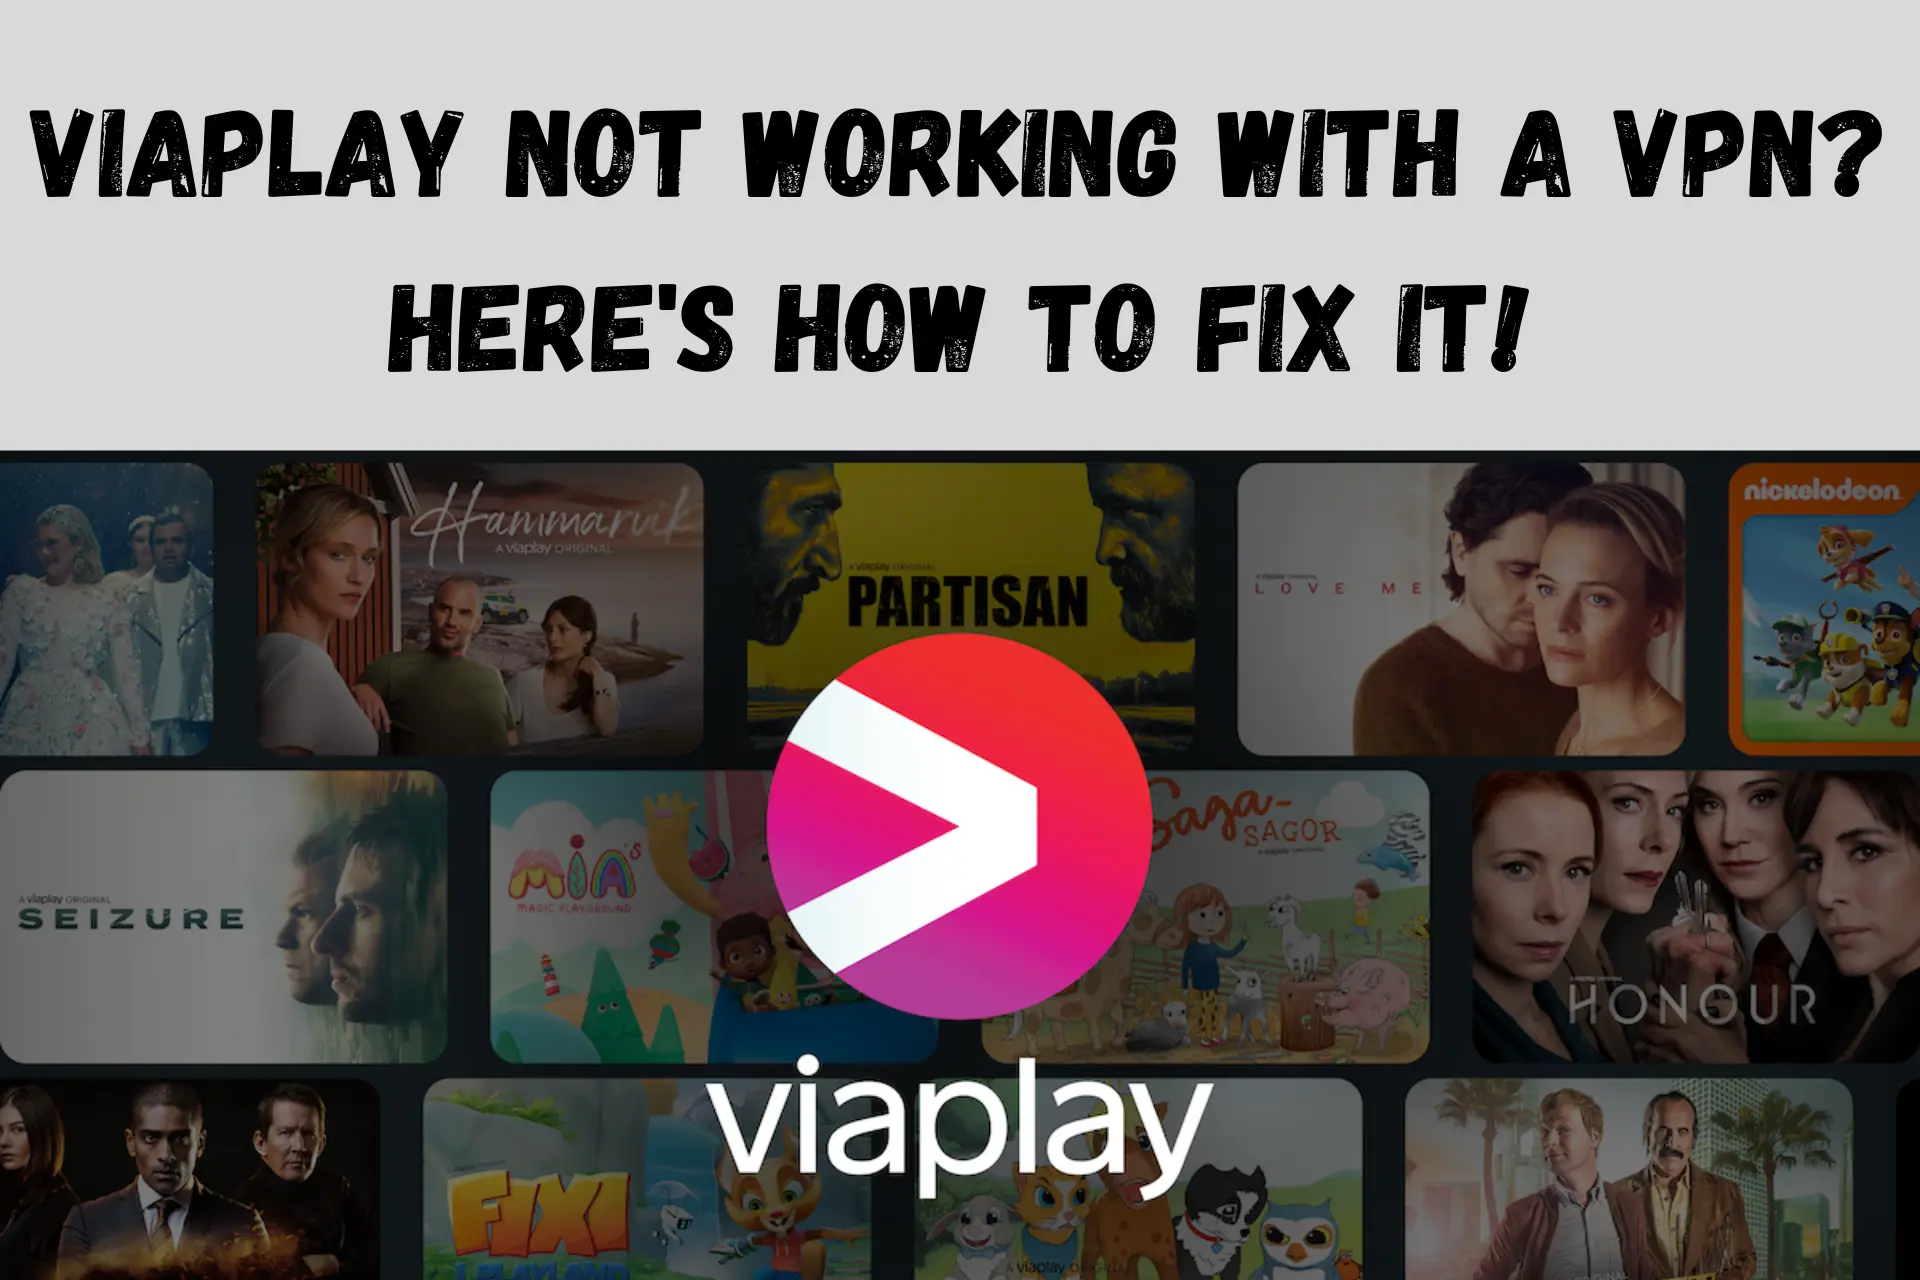 Viaplay not working with VPN